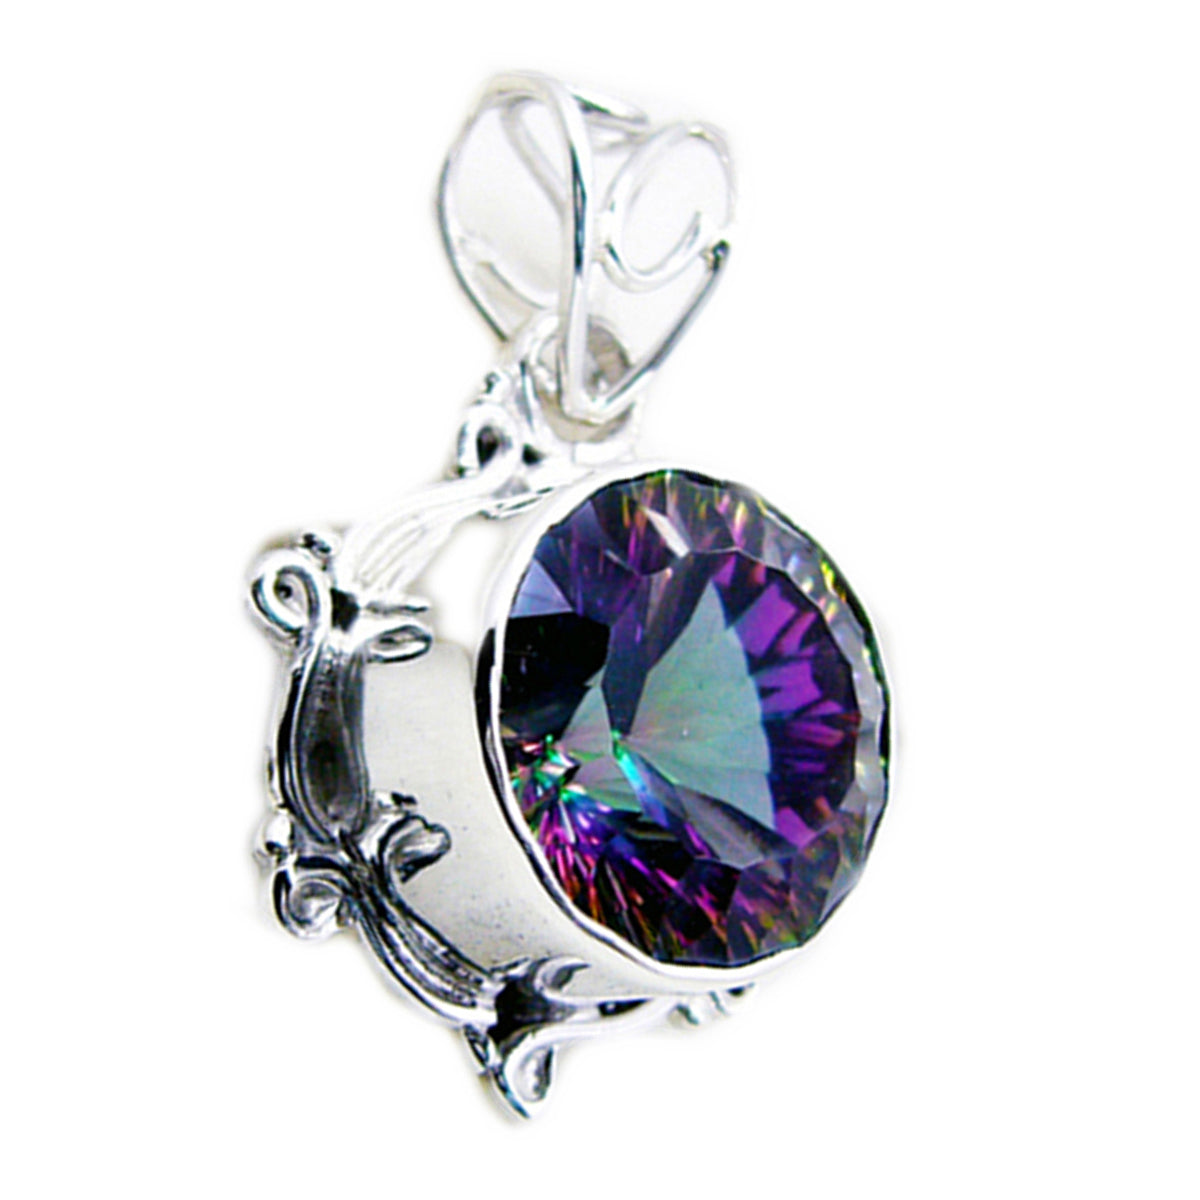 Riyo – magnifiques pierres précieuses rondes à facettes multicolores, quartz mystique, pendentif en argent massif, cadeau pour mariage